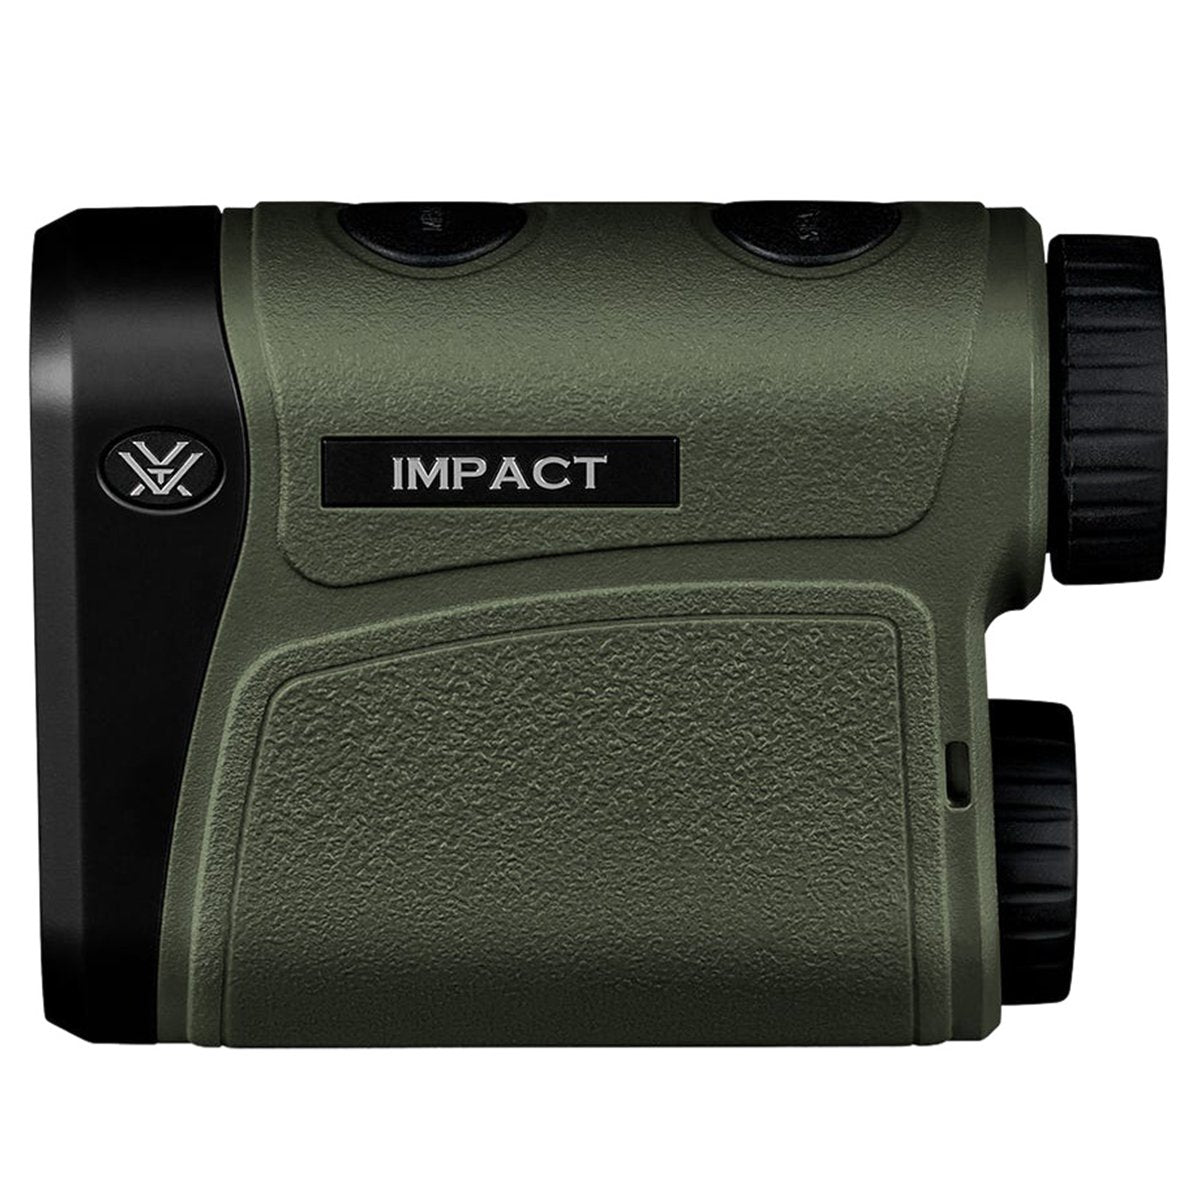 Vortex Impact 1000 Rangefinder in Vortex Impact 1000 Rangefinder by Vortex Optics | Optics - goHUNT Shop by GOHUNT | Vortex Optics - GOHUNT Shop